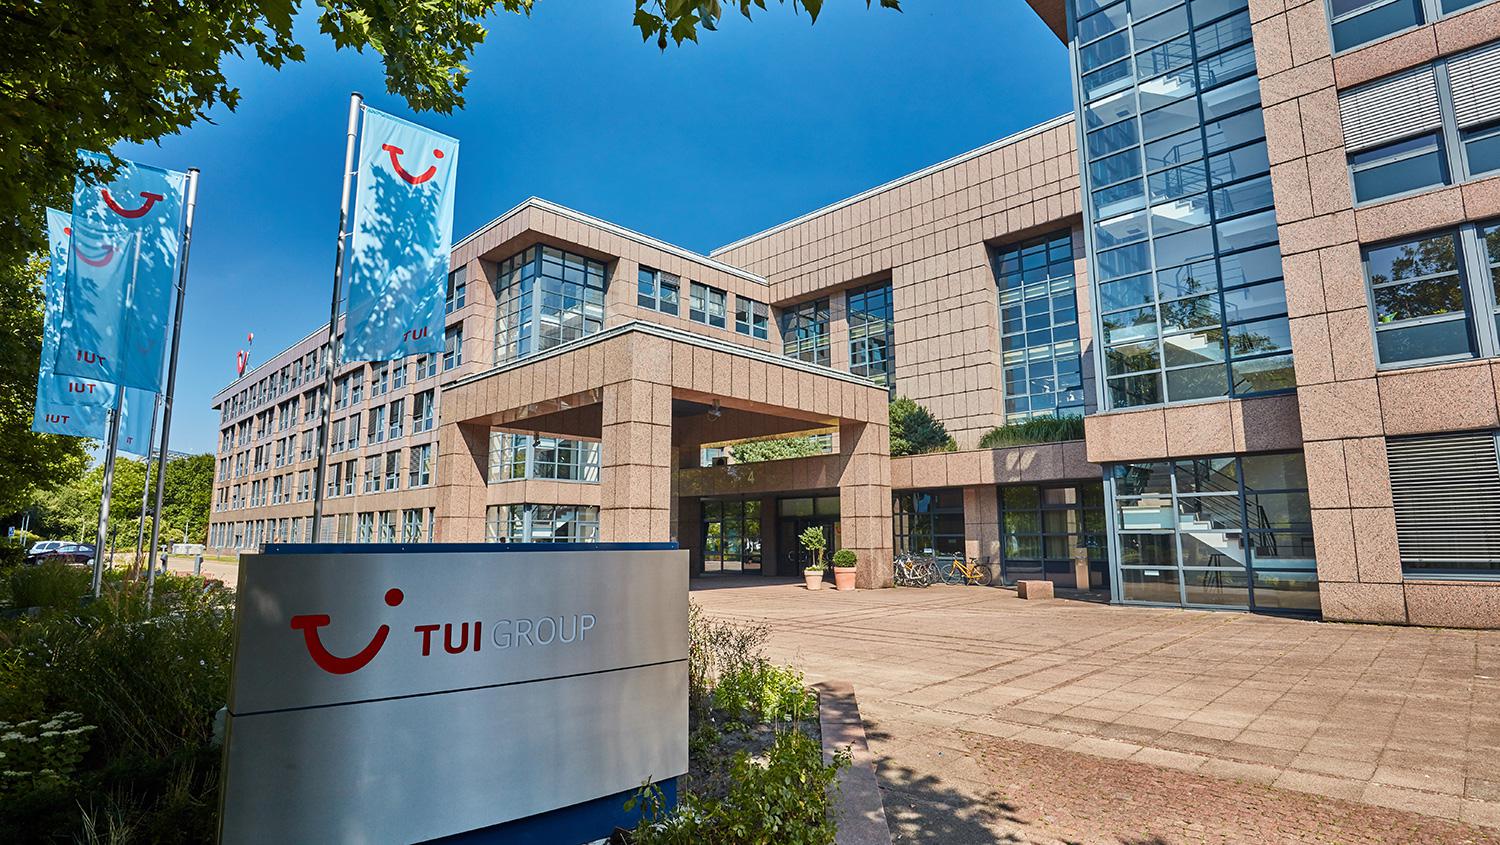 Alman tur operatörü TUI Group'tan koronavirüs kararı